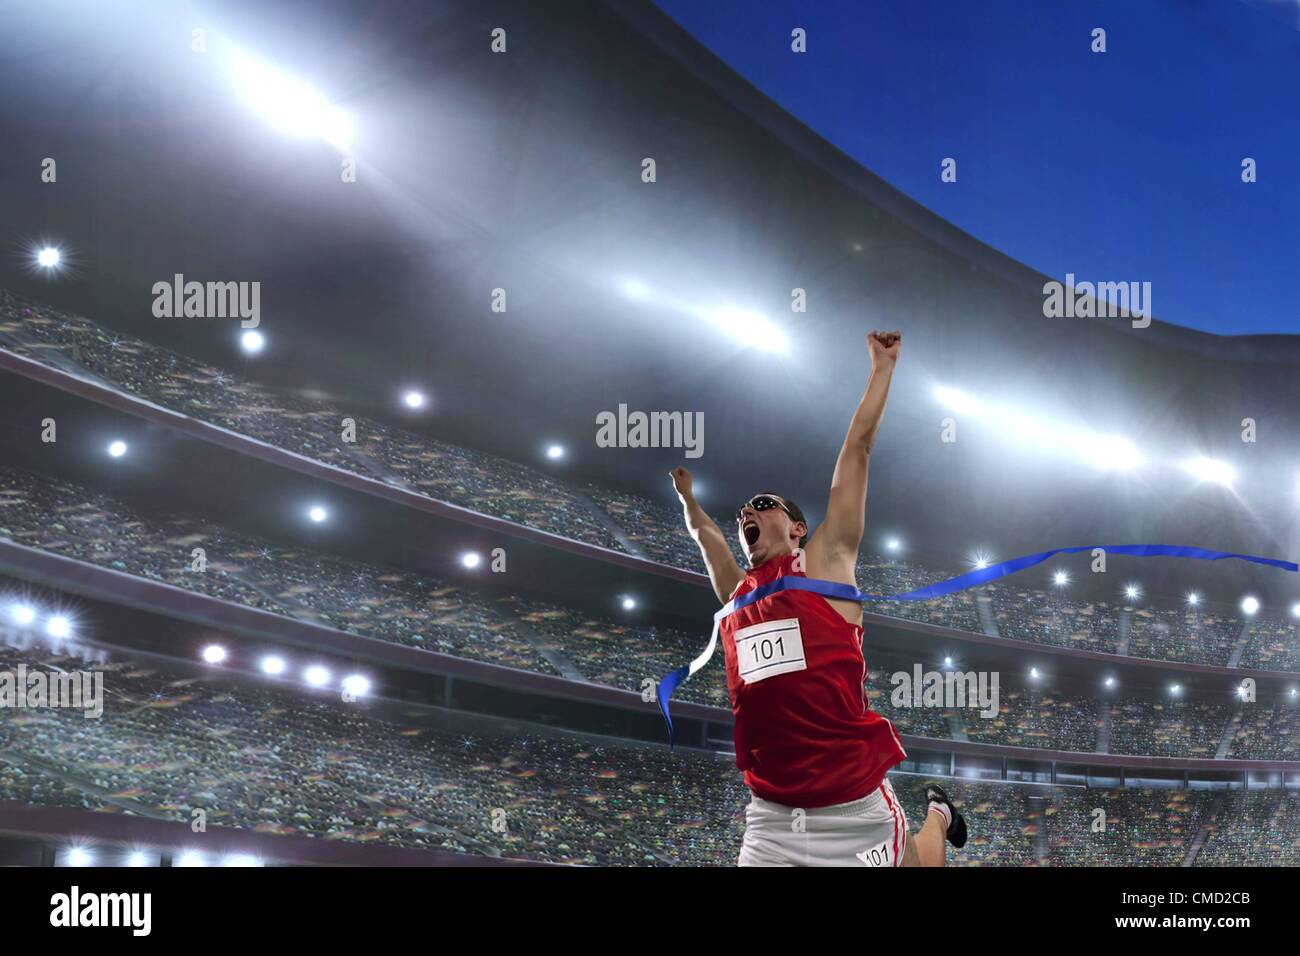 08.11.2011. Modell veröffentlicht Bild eines männlichen Athleten feiert seinen Sieg in ein Leichtathletikstadion vor einer großen Schar von fans Stockfoto